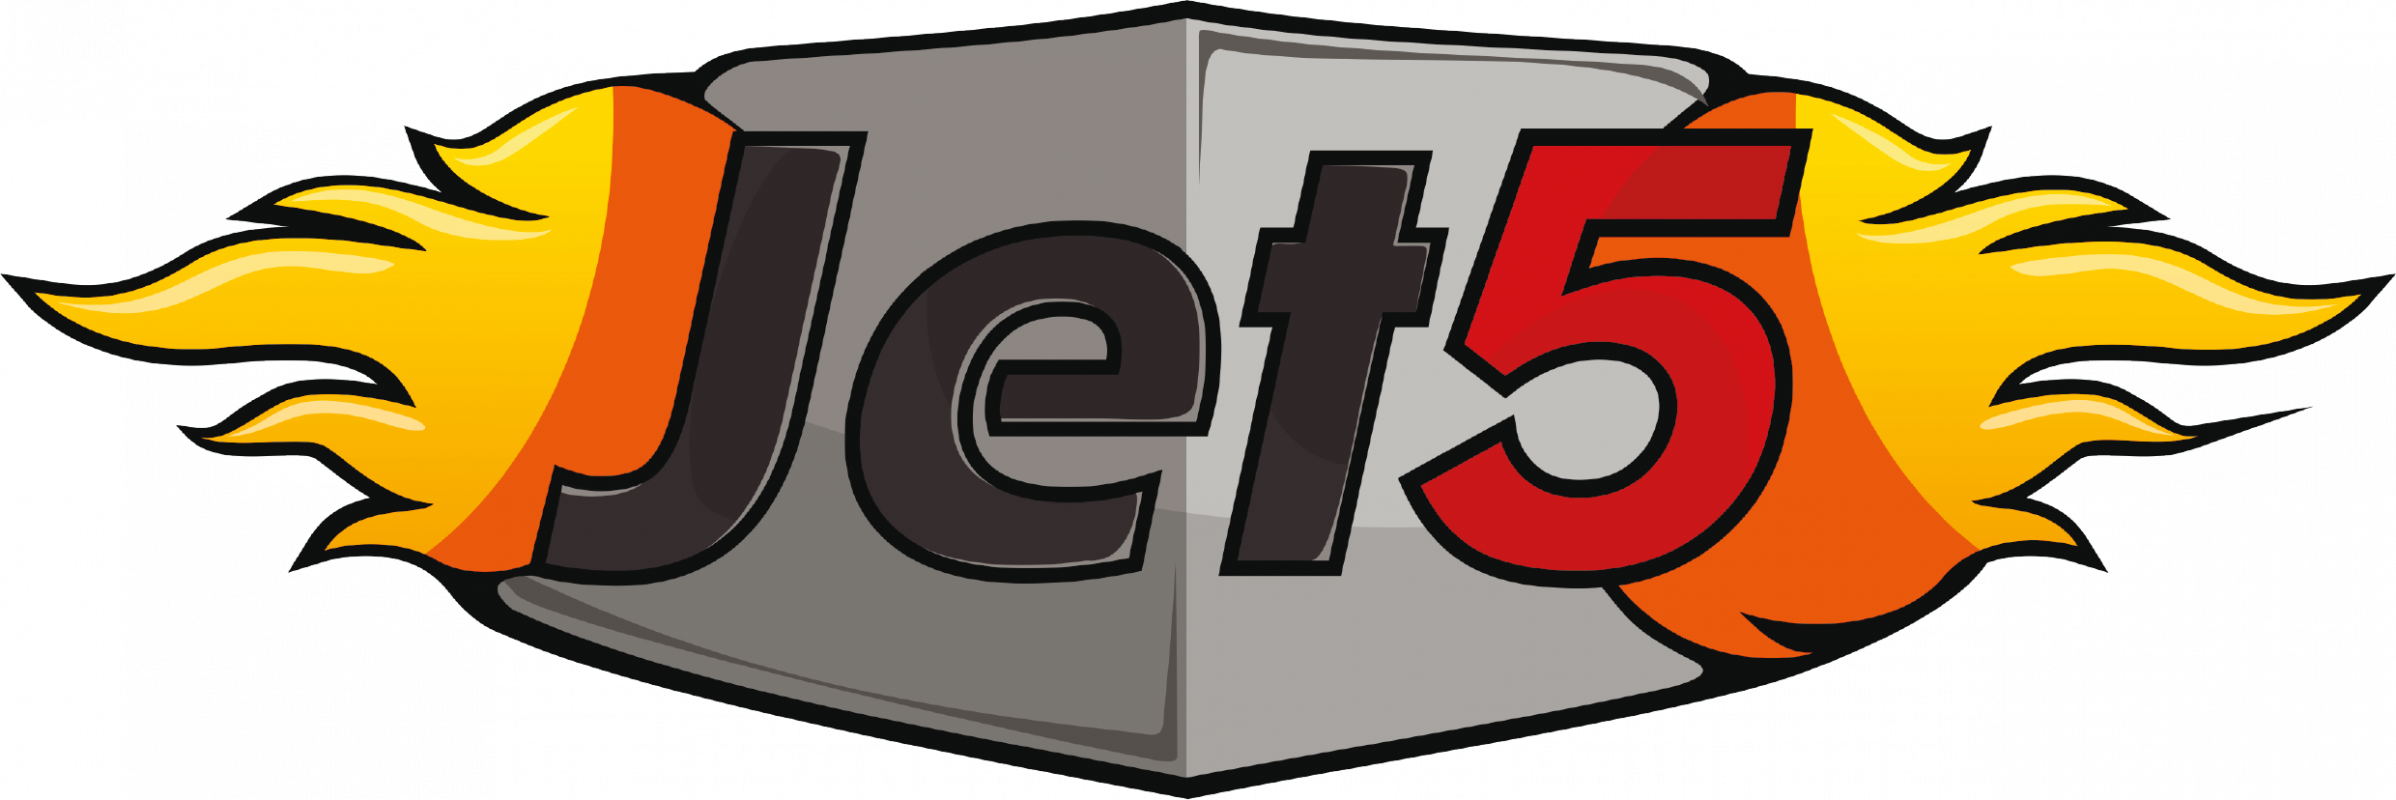 Jet5: отзывы от сотрудников и партнеров